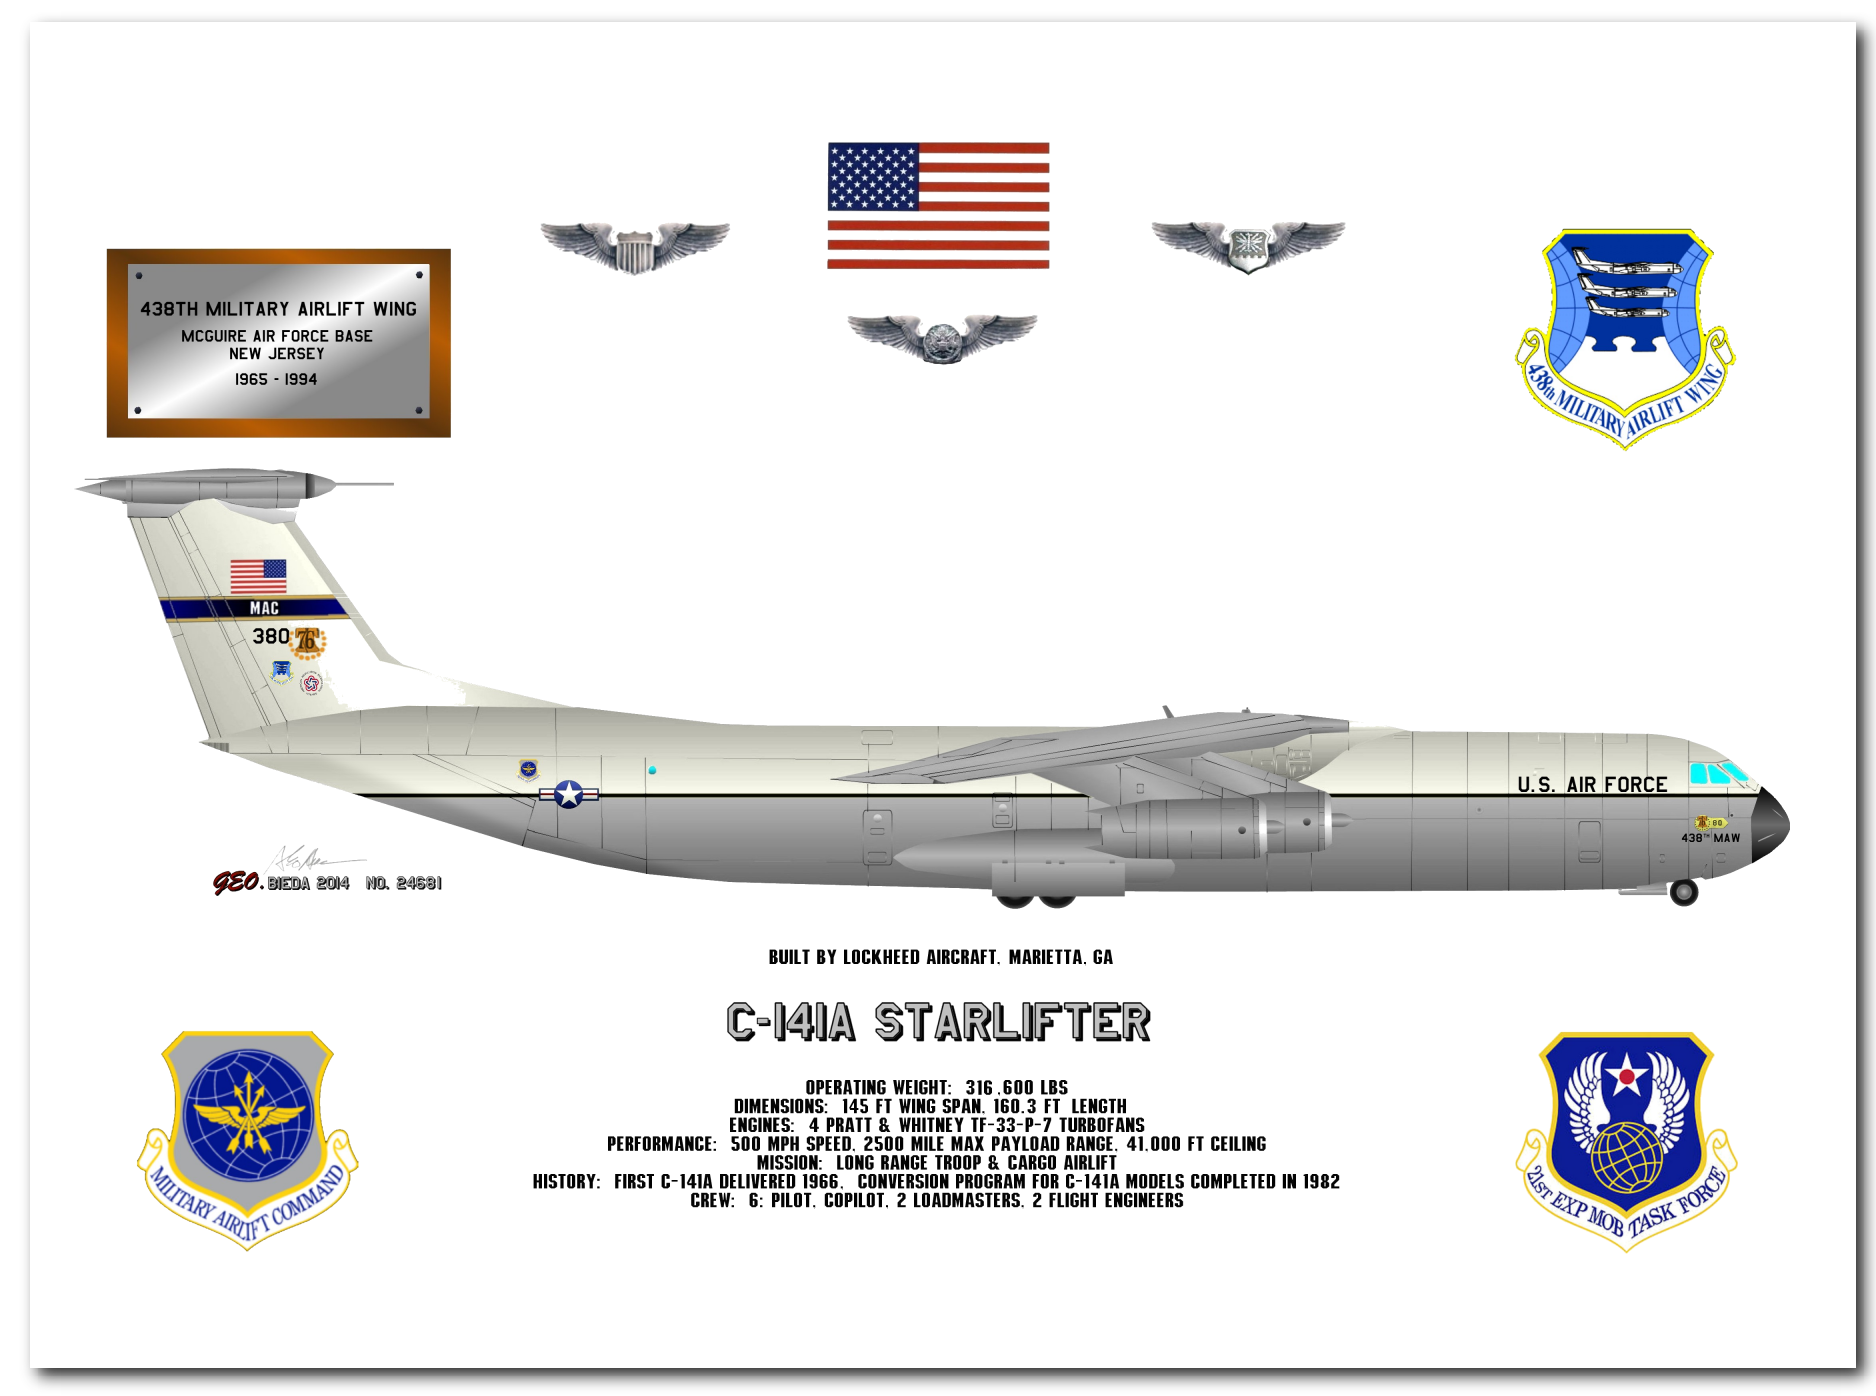 C-141 Starlifter Profile Drawings by George Bieda